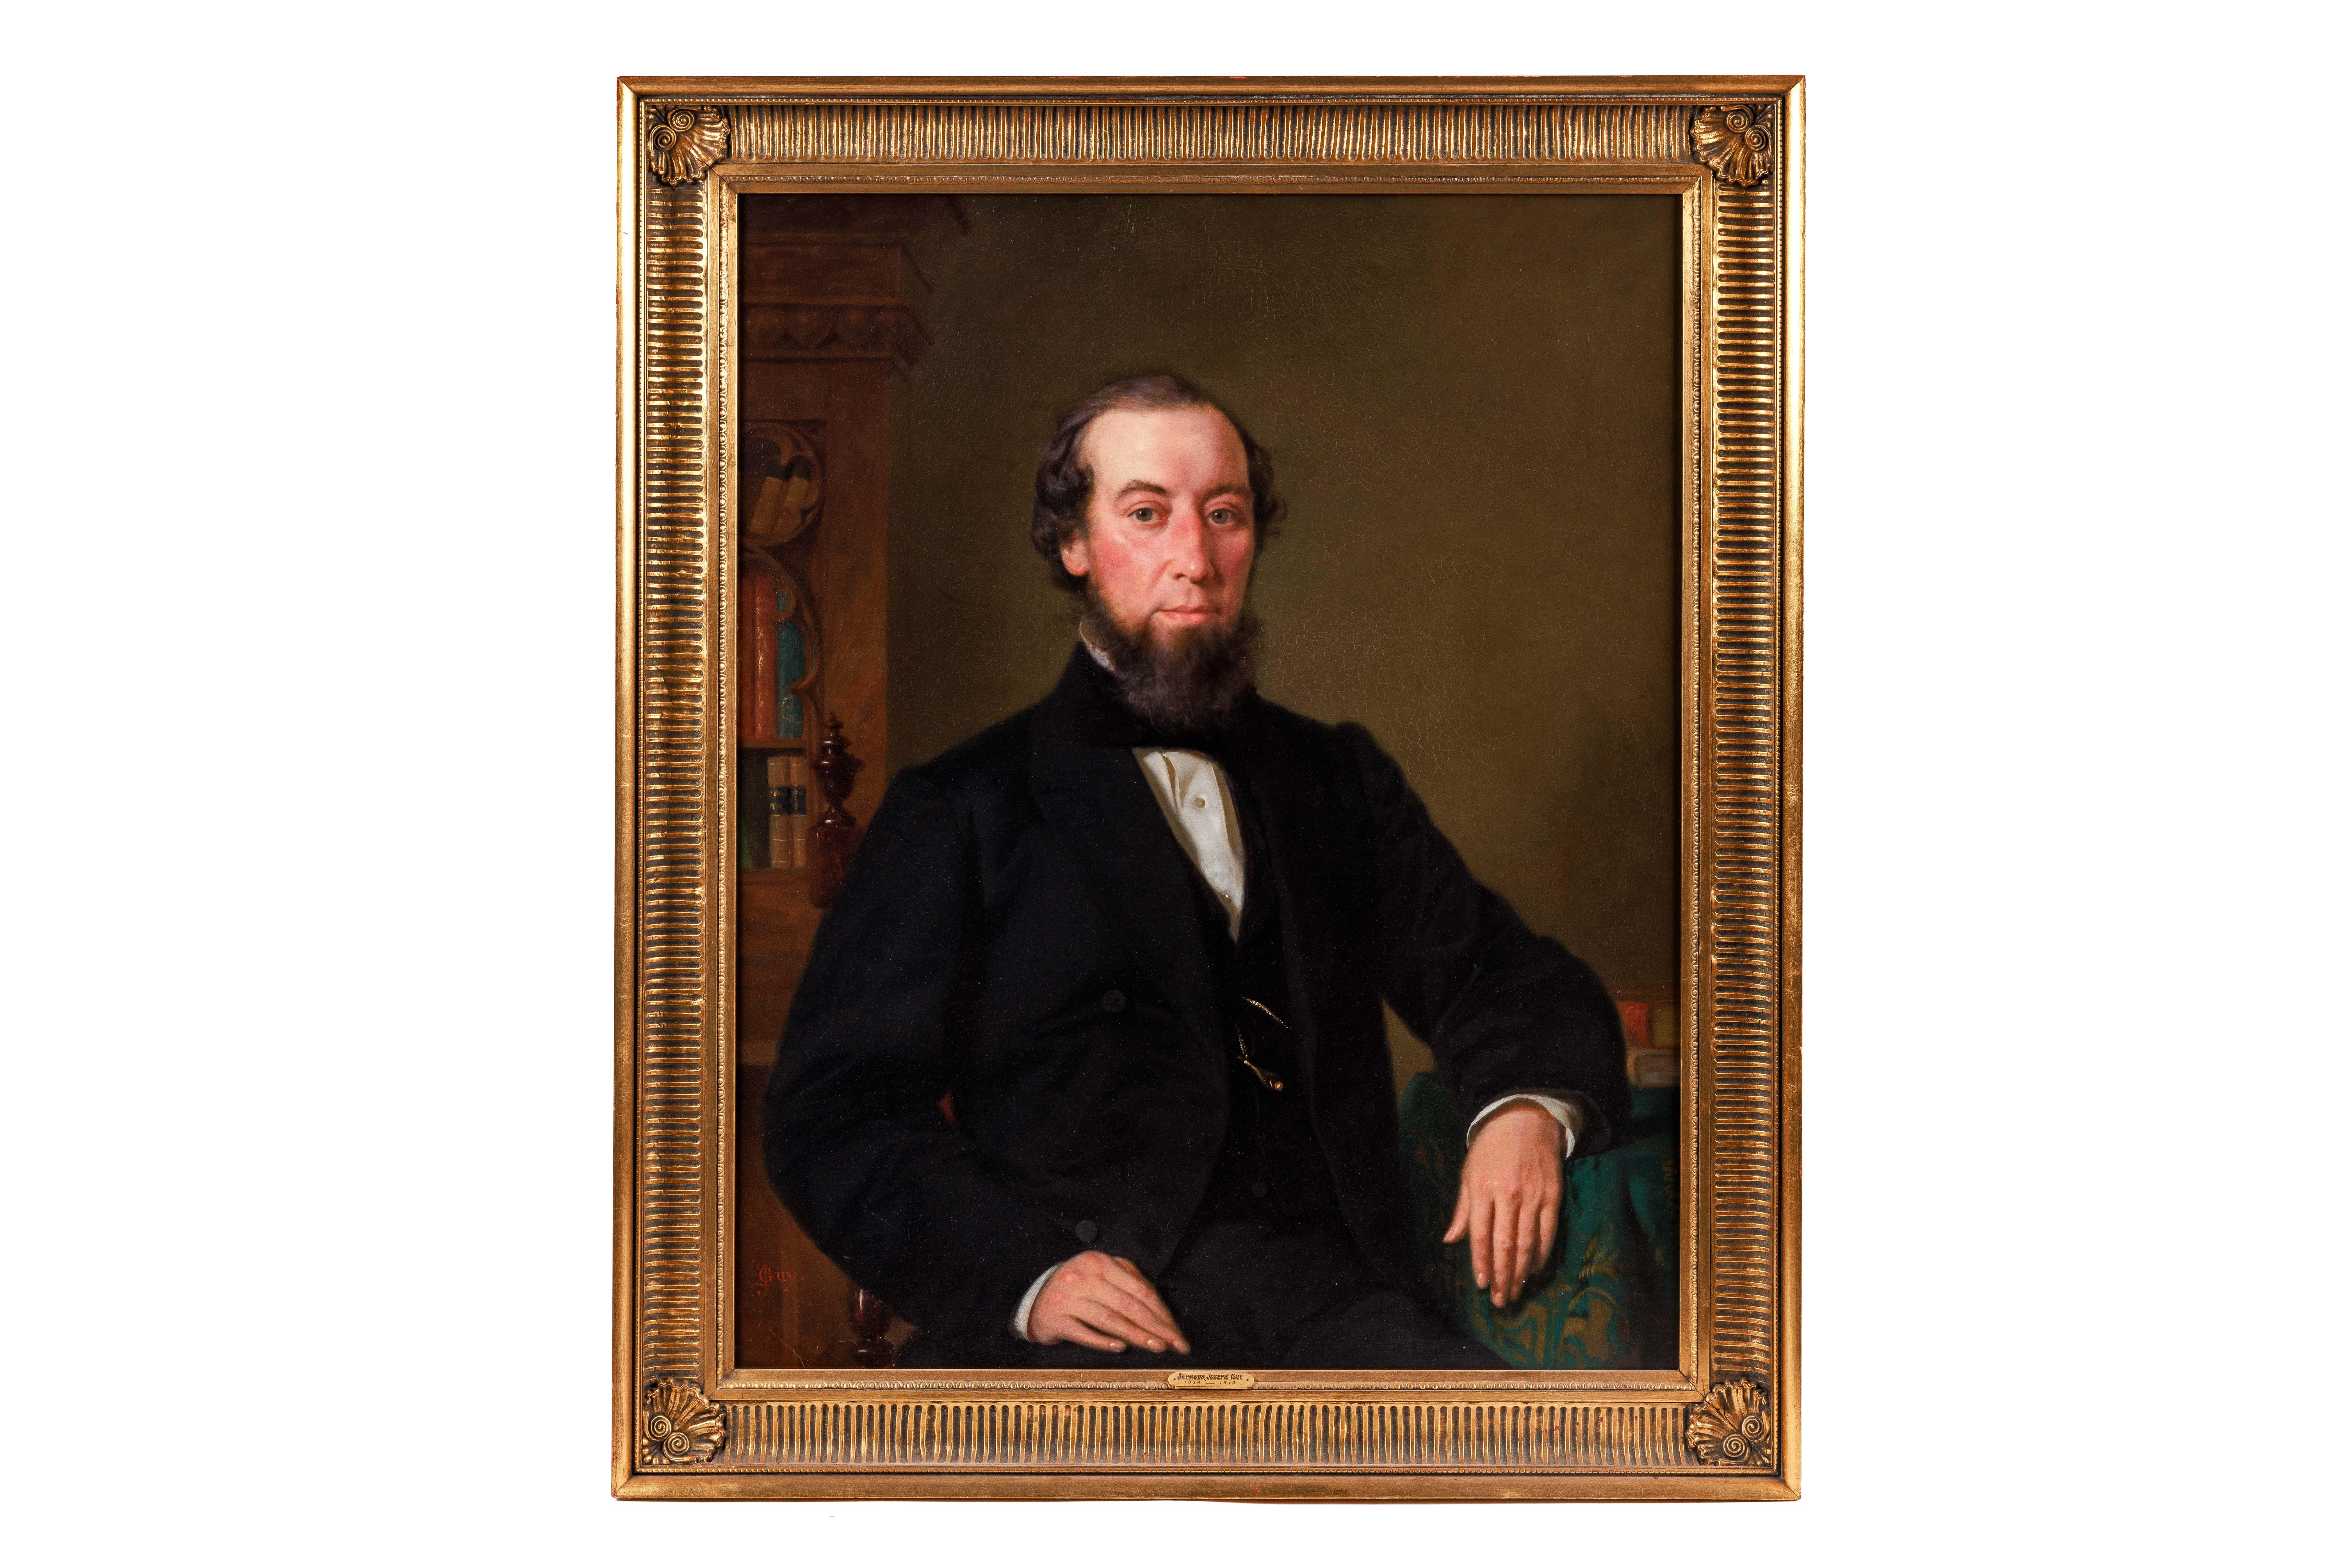 Seymour Joseph Guy (américain, 1824-1910) A Portrait of a Gentleman, Huile sur toile, Fin du XIXe siècle, vers 1885. 

Signé en bas à gauche avec le monogramme : SJ GUY.

Taille de la toile : 35.5" de haut x 28.5" de large
Cadre : 42" de haut x 36"